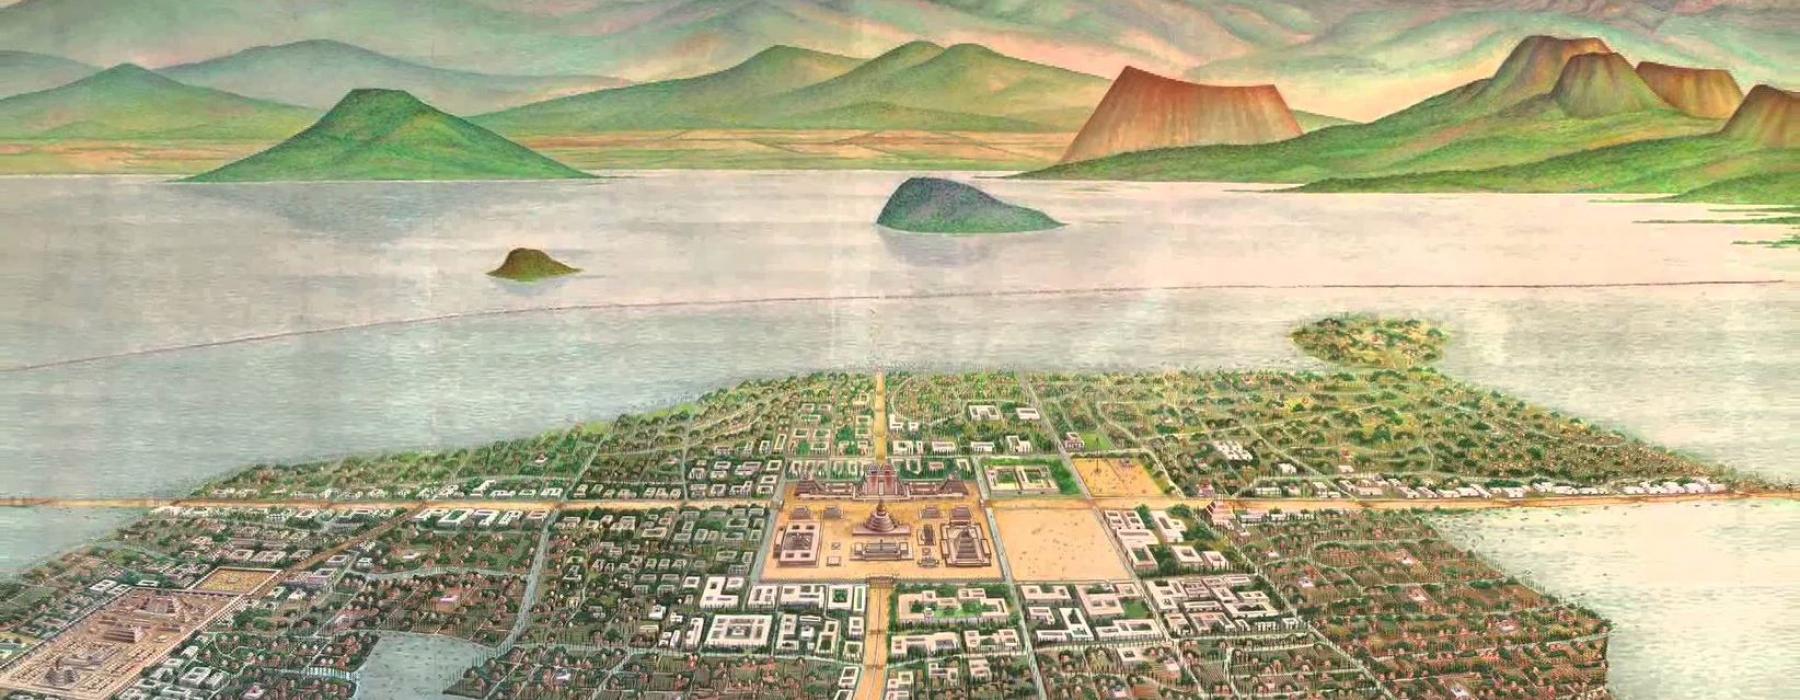 lezing-tenochtitlan